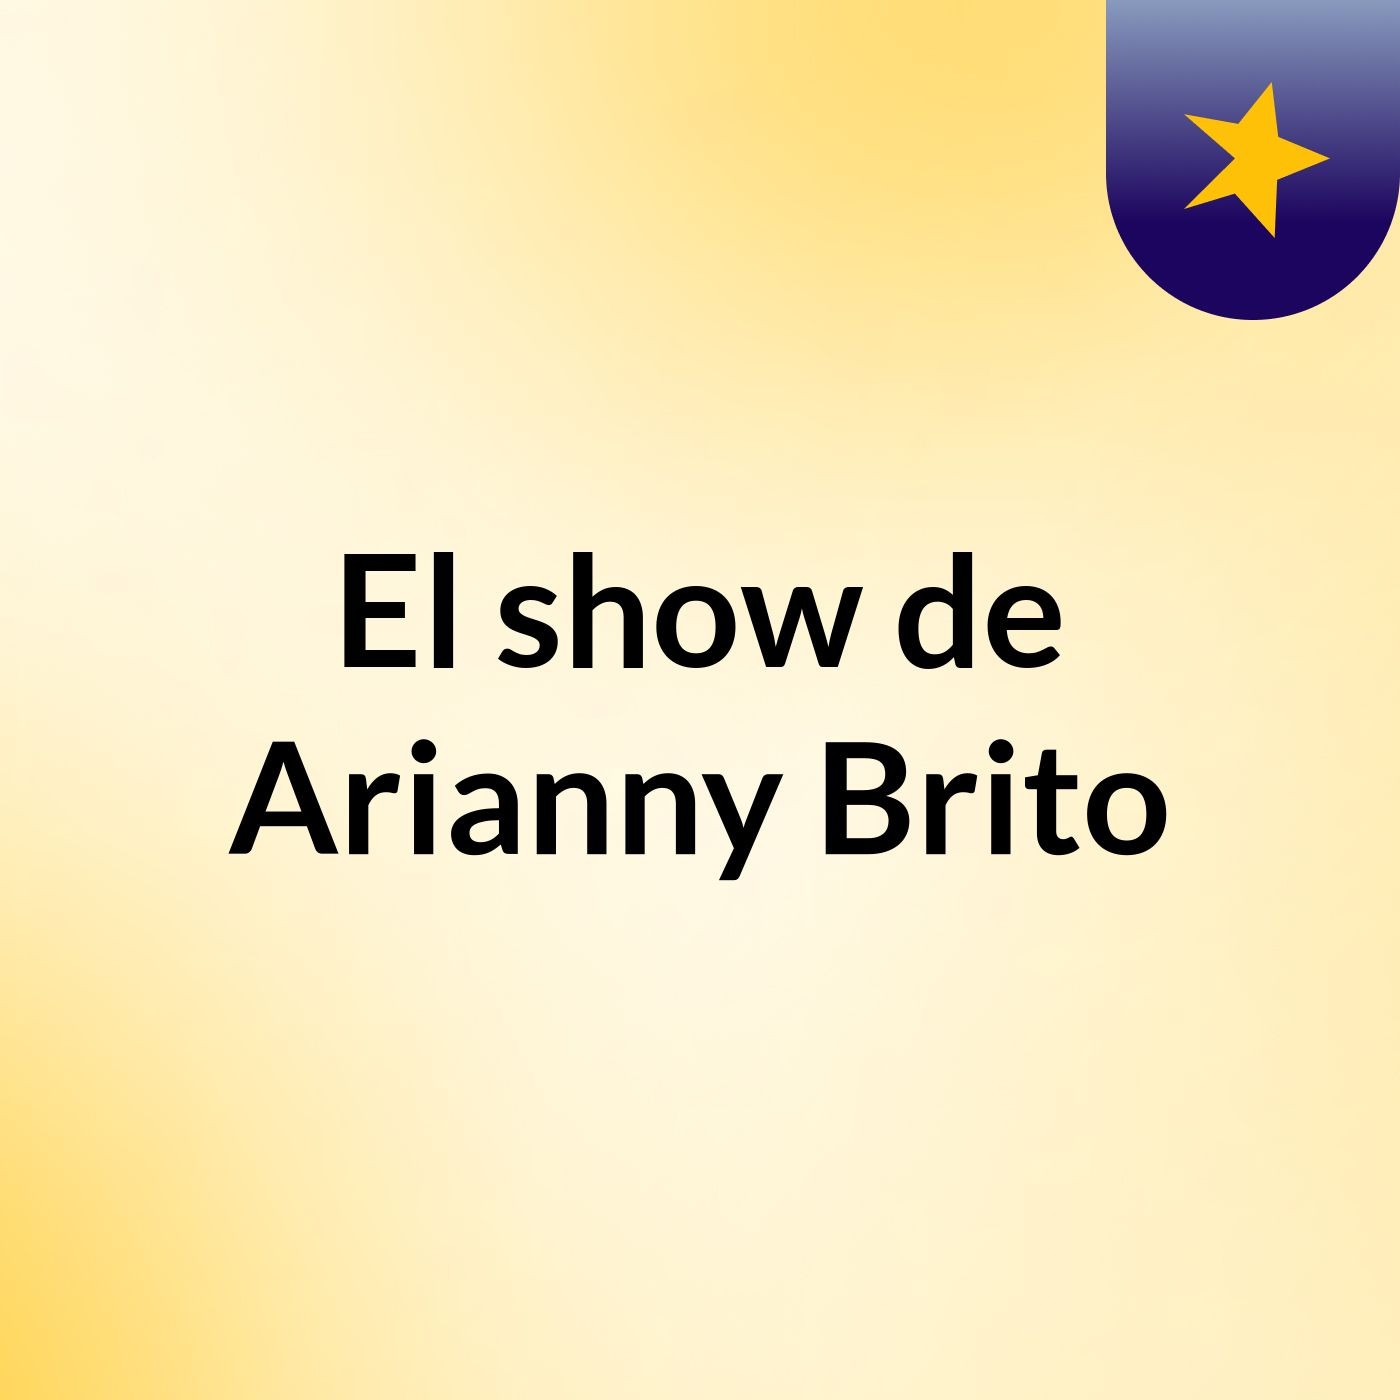 El show de Arianny Brito